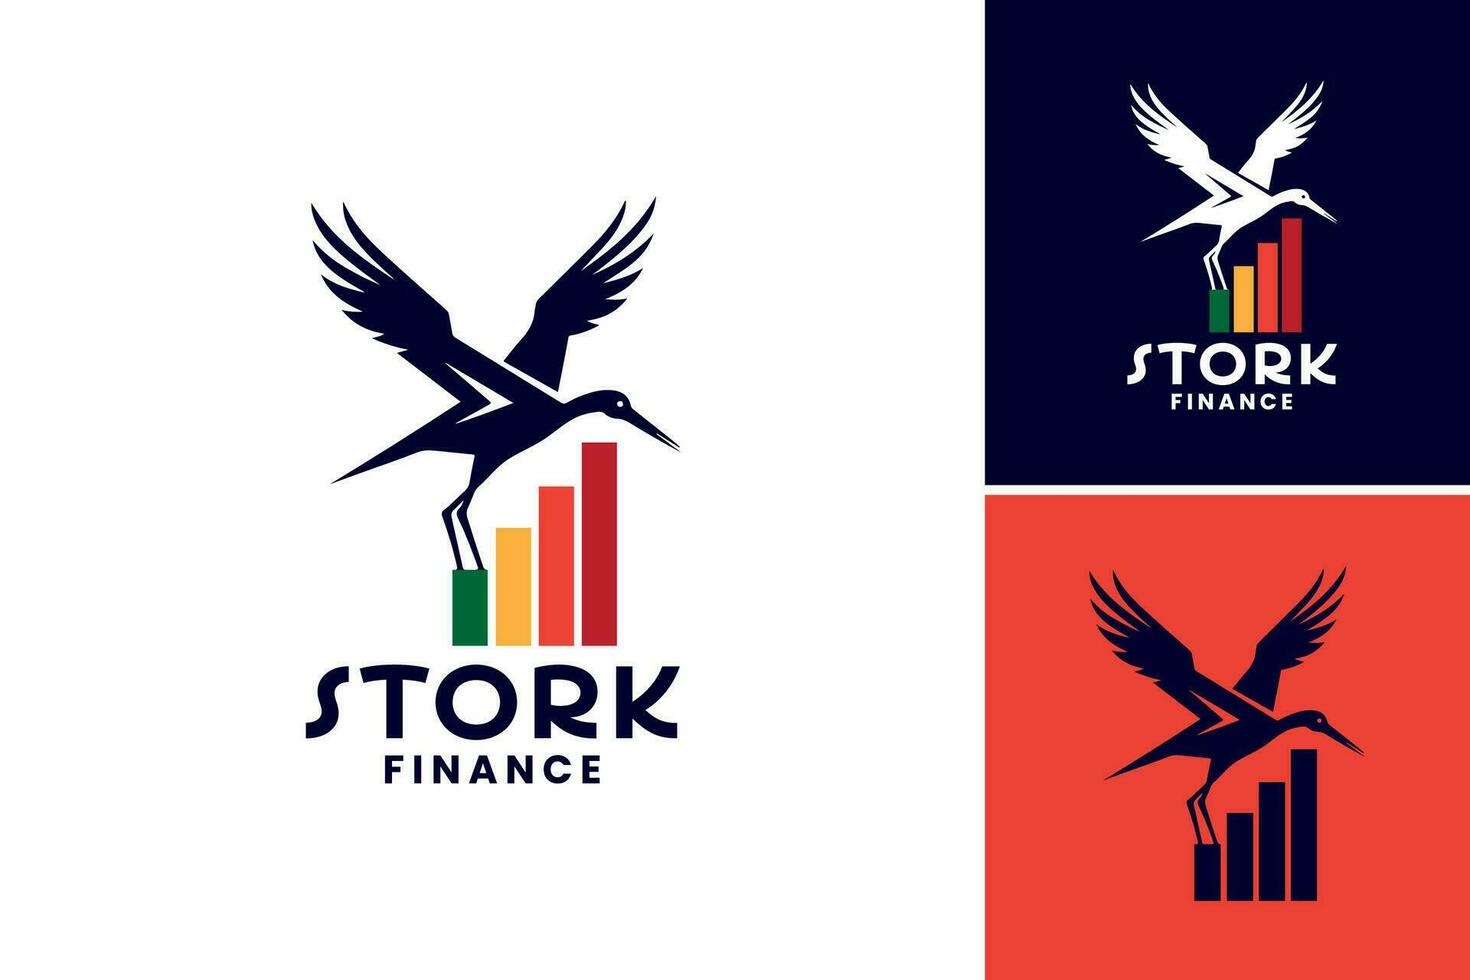 ooievaar financiën logo is een ontwerp Bedrijfsmiddel geschikt voor financieel bedrijven of adviseurs wie willen een uniek en professioneel logo incorporeren de symbolisch ooievaar beeldspraak. vector